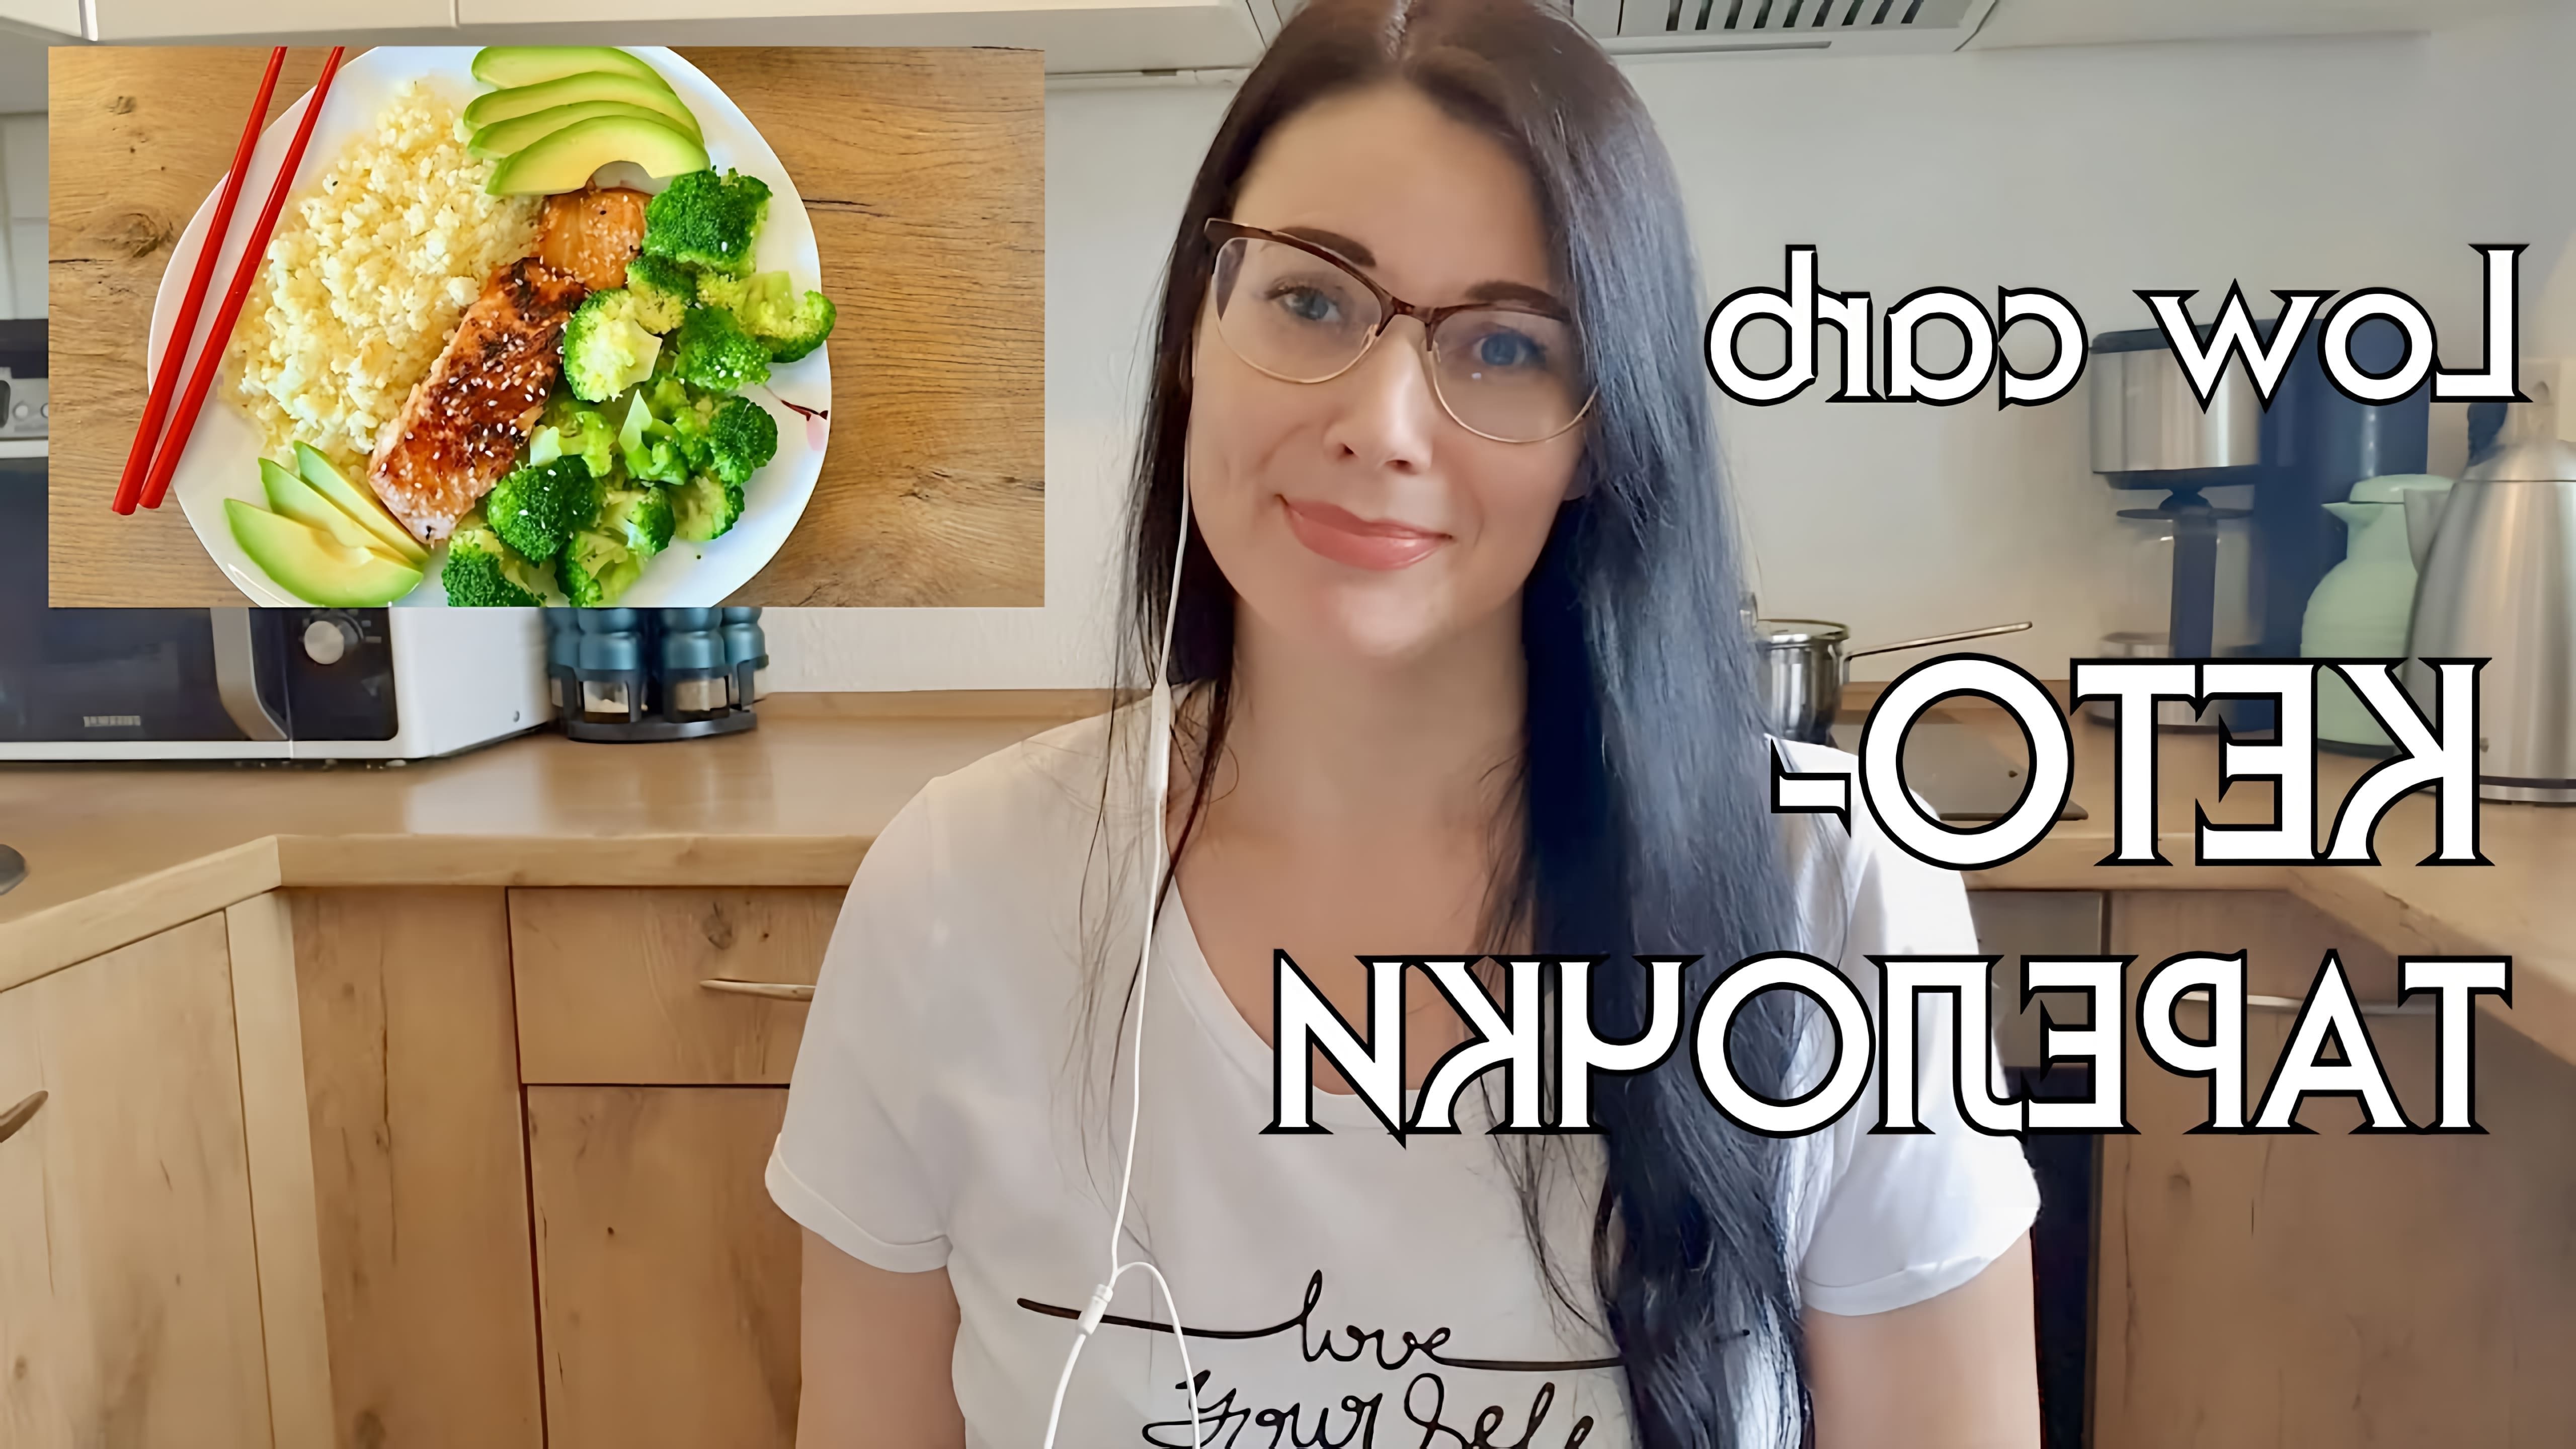 В этом видео автор делится своим опытом питания на кето-диете, предлагая различные варианты низкоуглеводных блюд